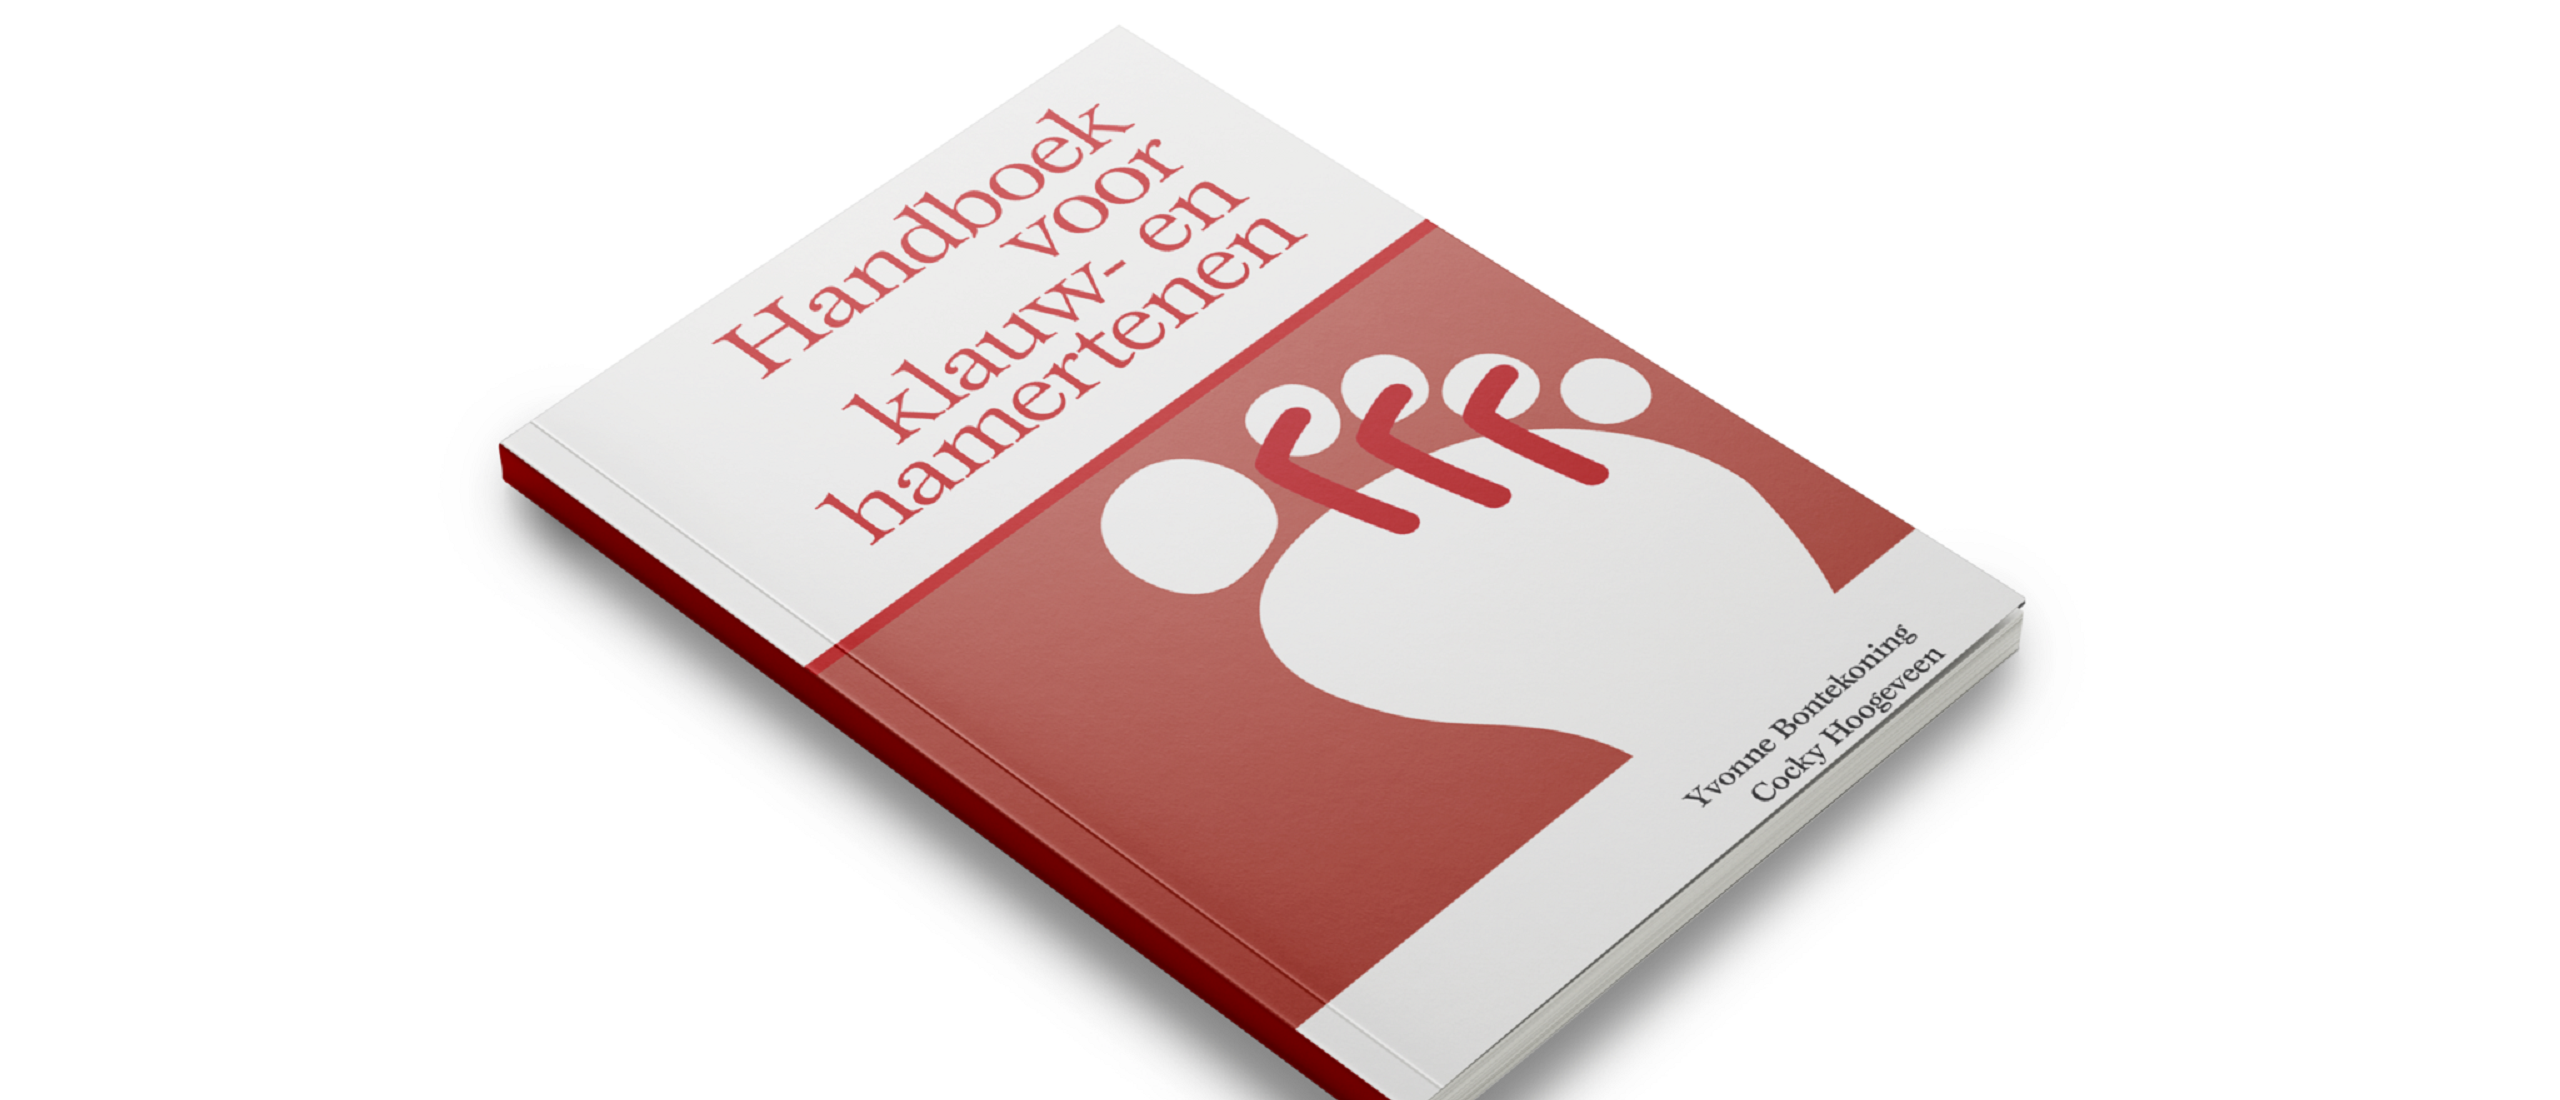 Het Handboek voor klauw- en hamertenen is beschikbaar!